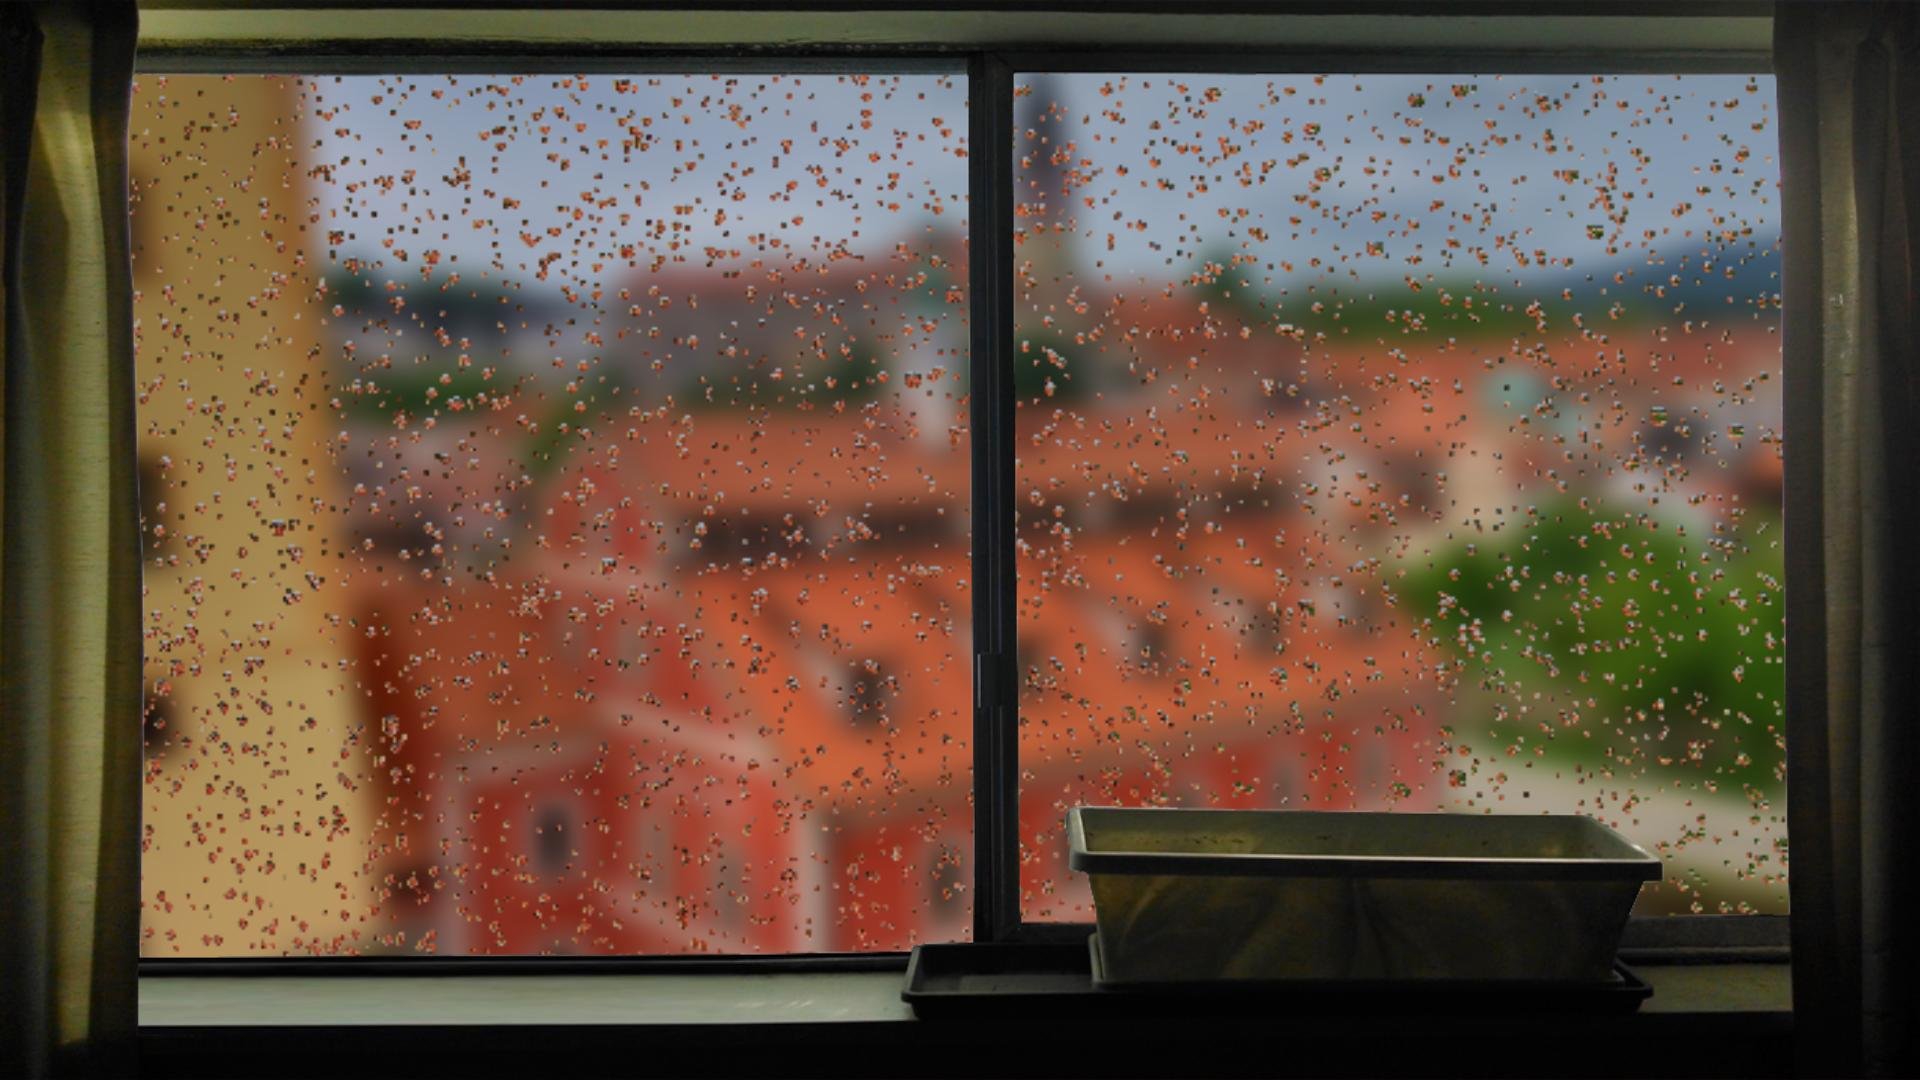 Ilgiz за окном дождь. Дождь в окне. Дождь за окном. Фон окно дождь. Дом окно дождь.